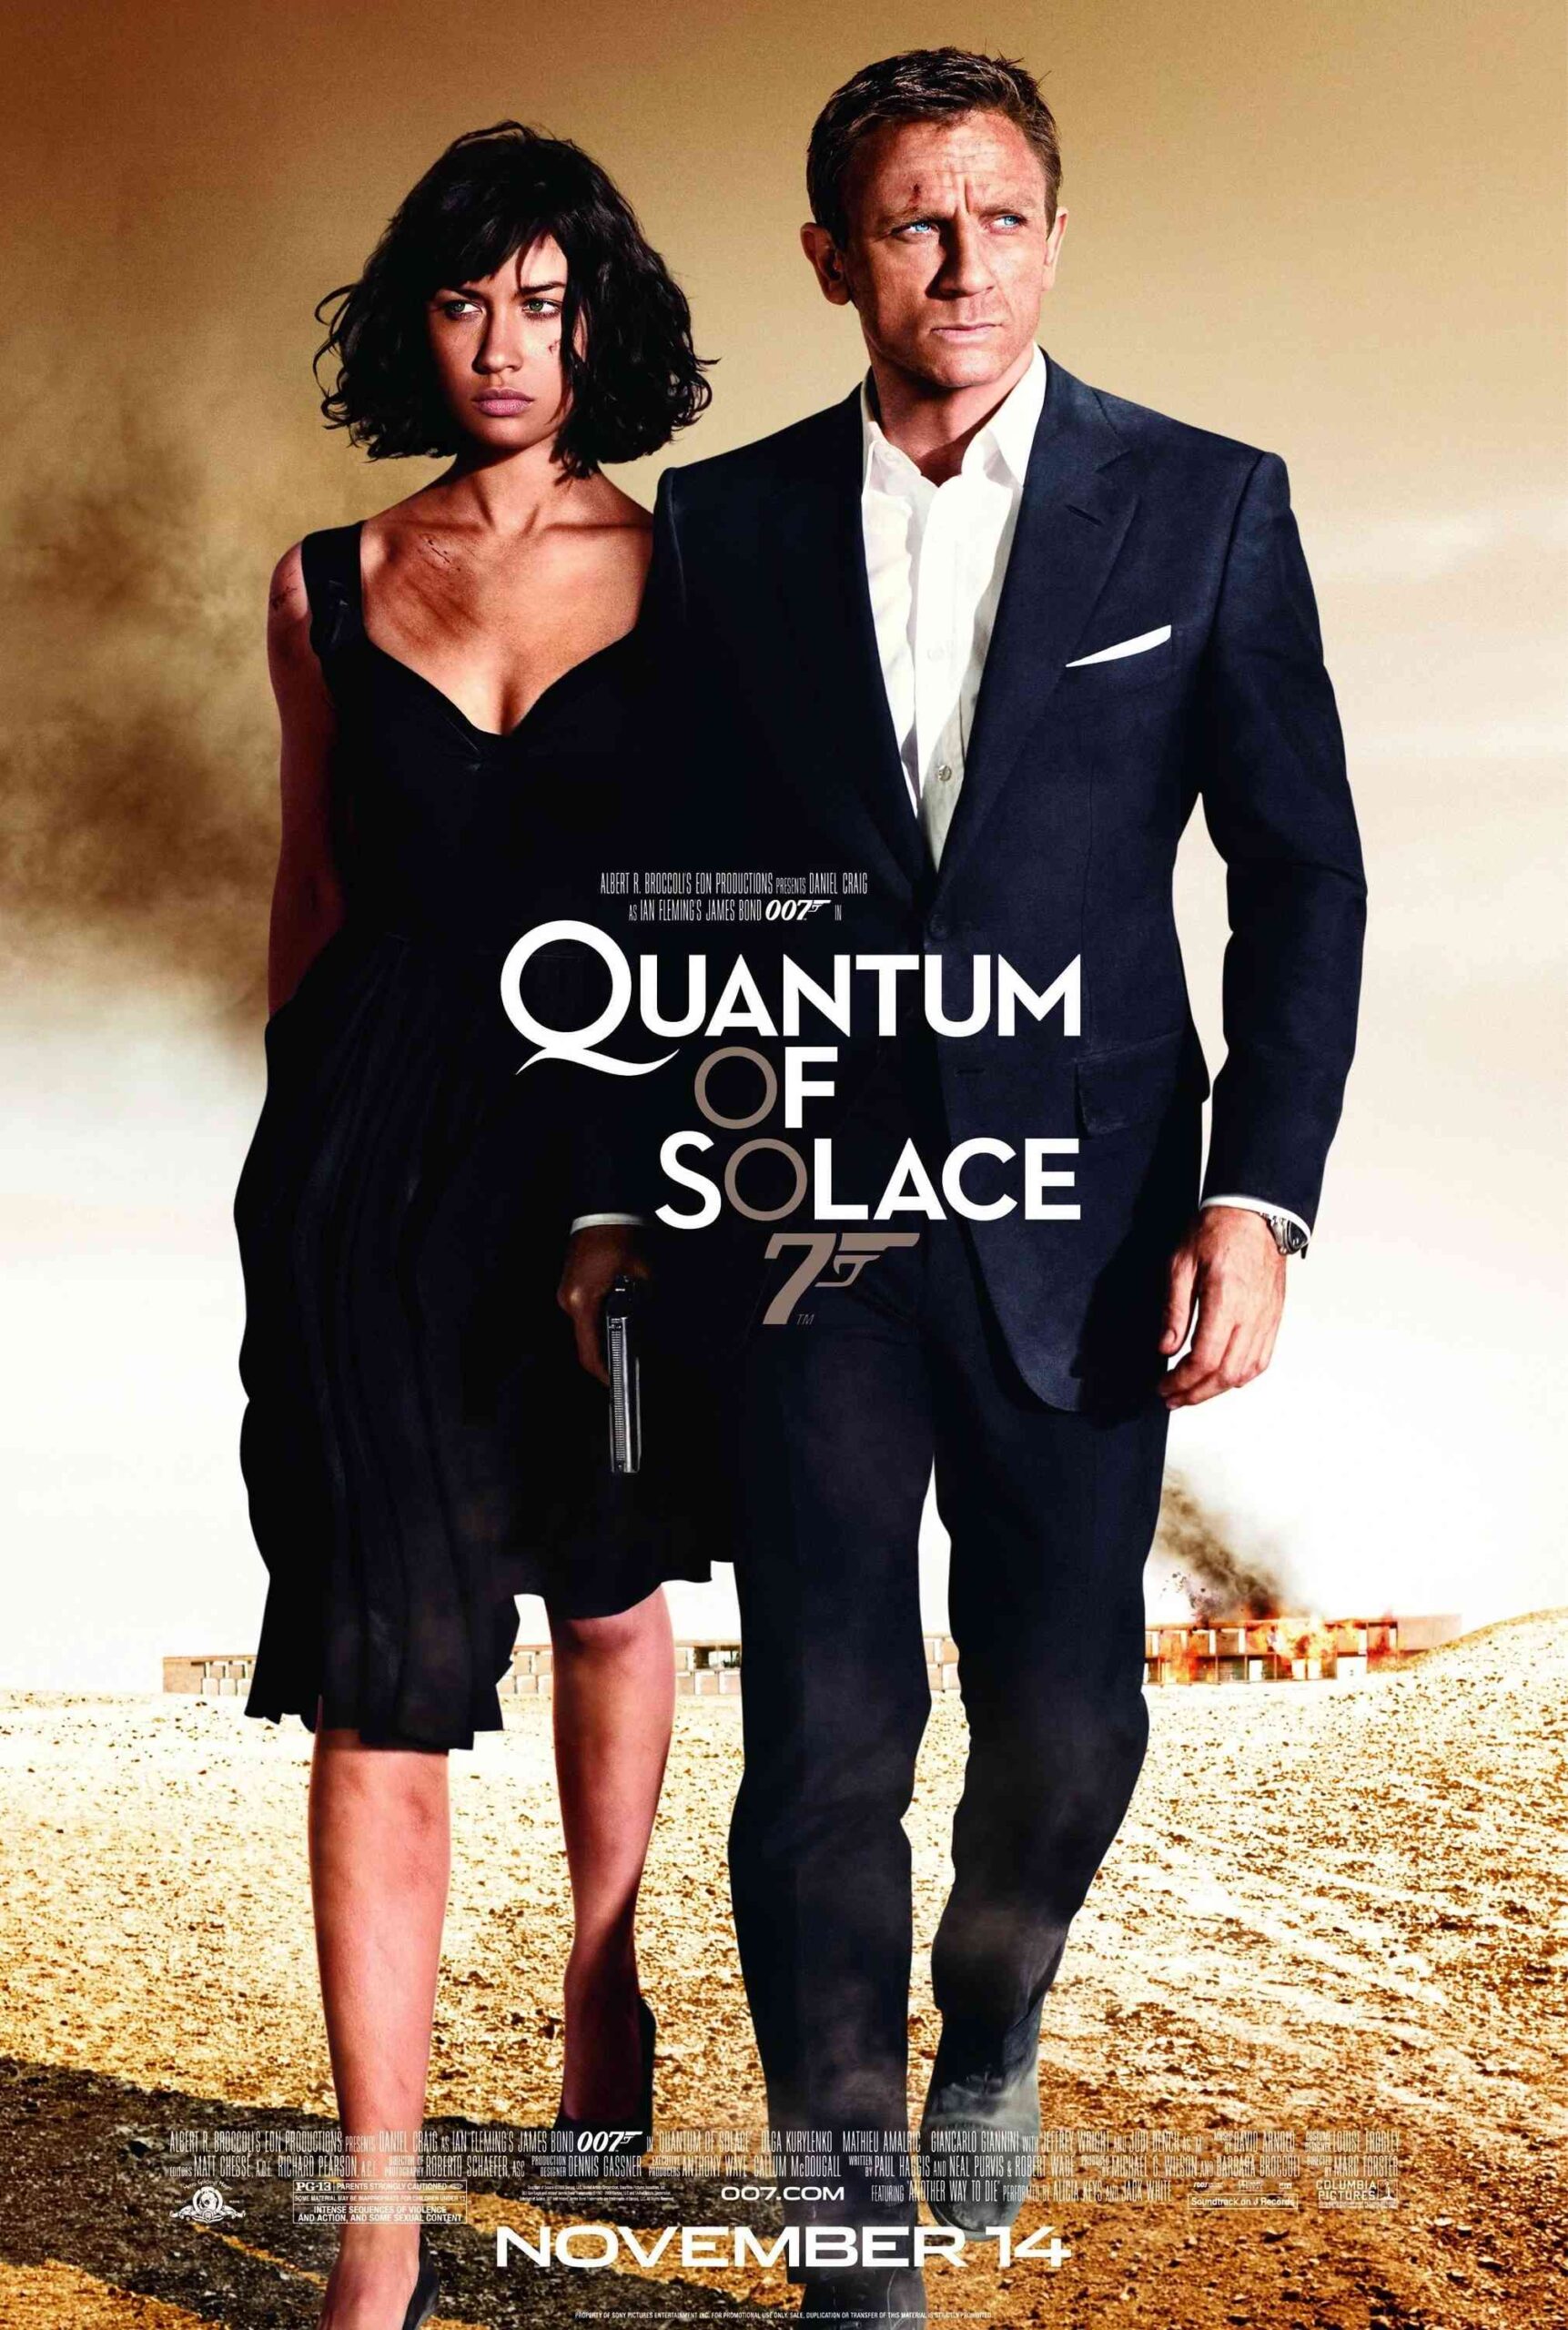 FULL MOVIE: Quantum Of Solace (2008) [Action]